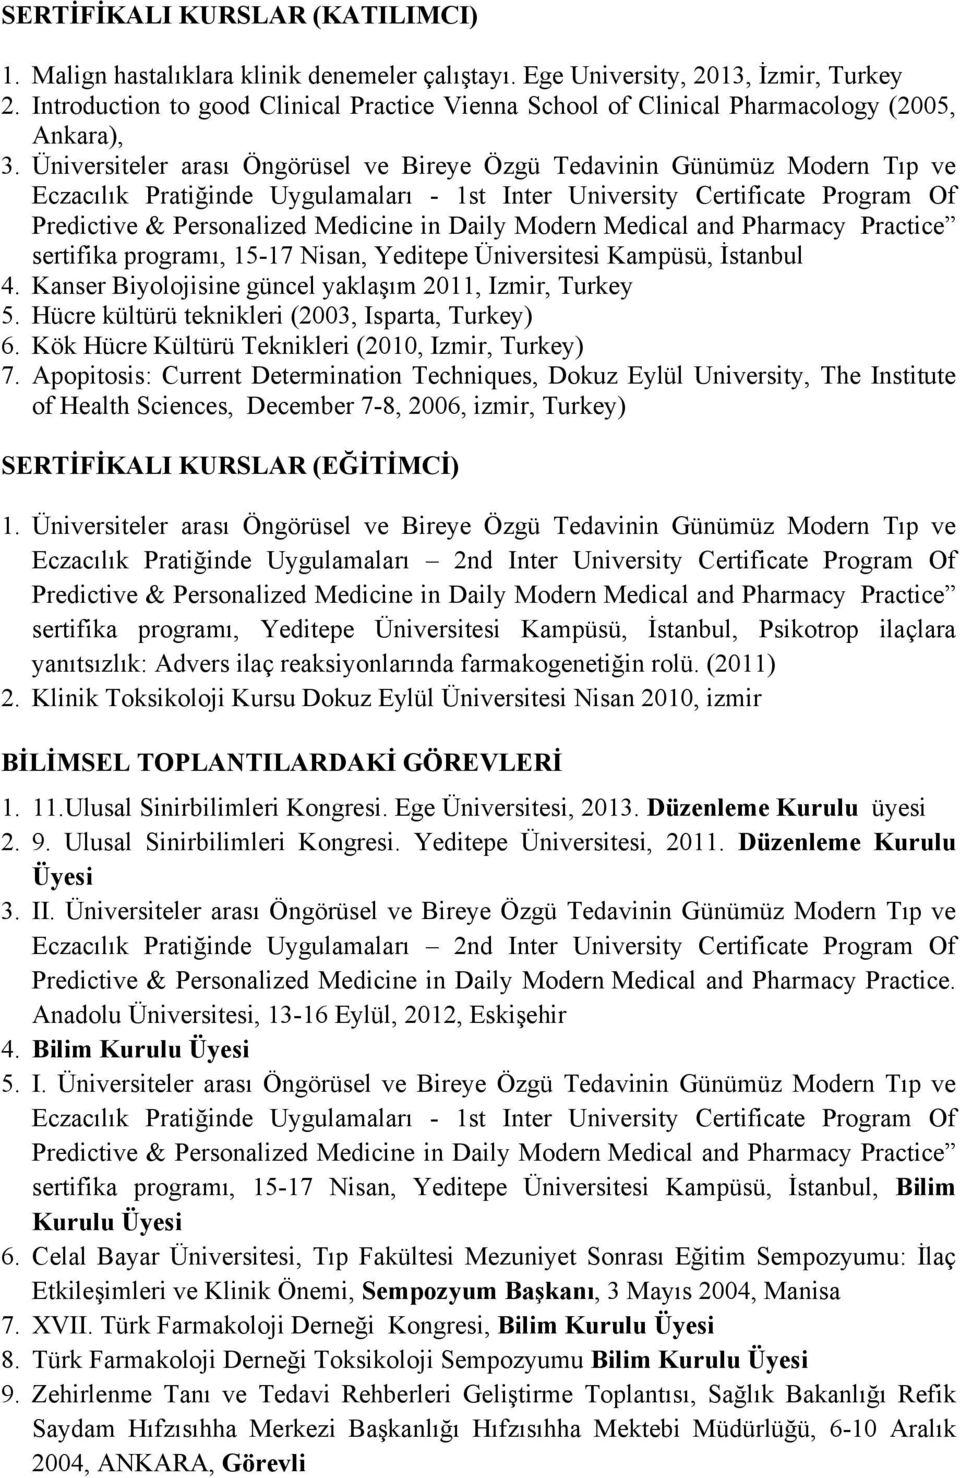 Üniversiteler arası Öngörüsel ve Bireye Özgü Tedavinin Günümüz Modern Tıp ve Eczacılık Pratiğinde Uygulamaları - 1st Inter University Certificate Program Of Predictive & Personalized Medicine in